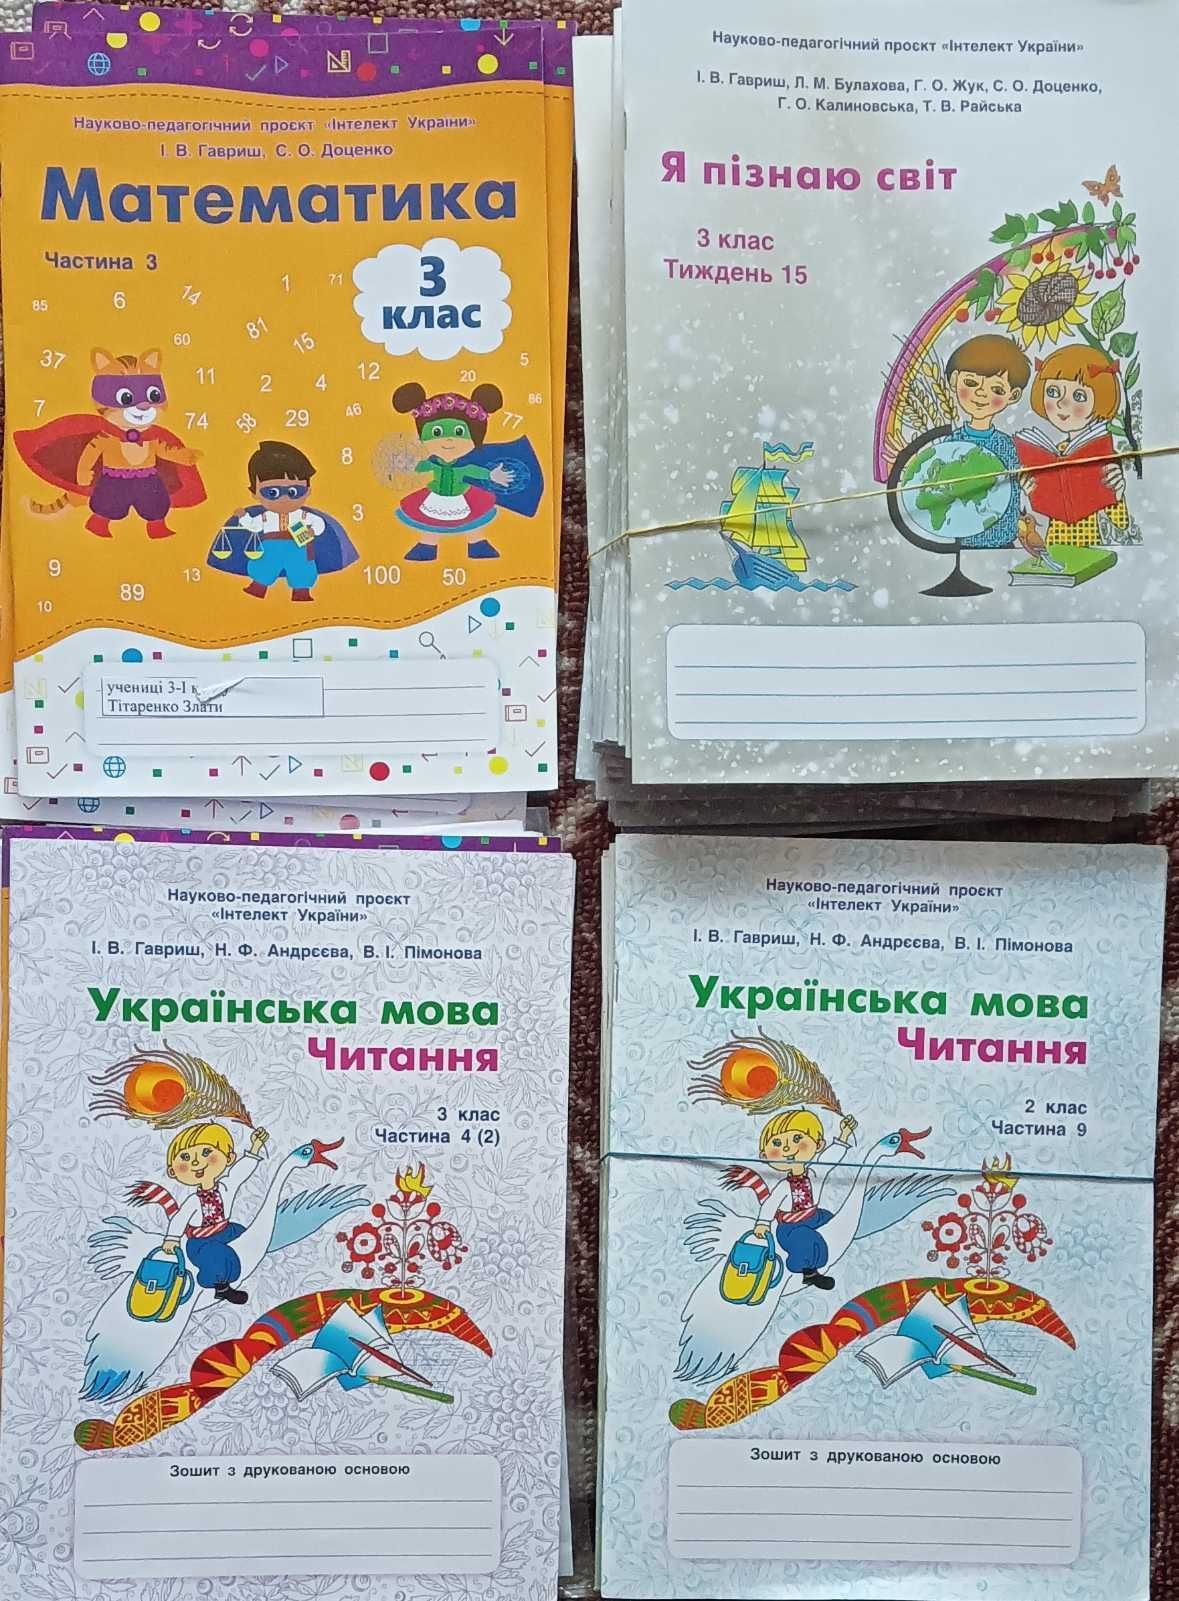 Інтелект України книжки підручники журнали нові книги тетради